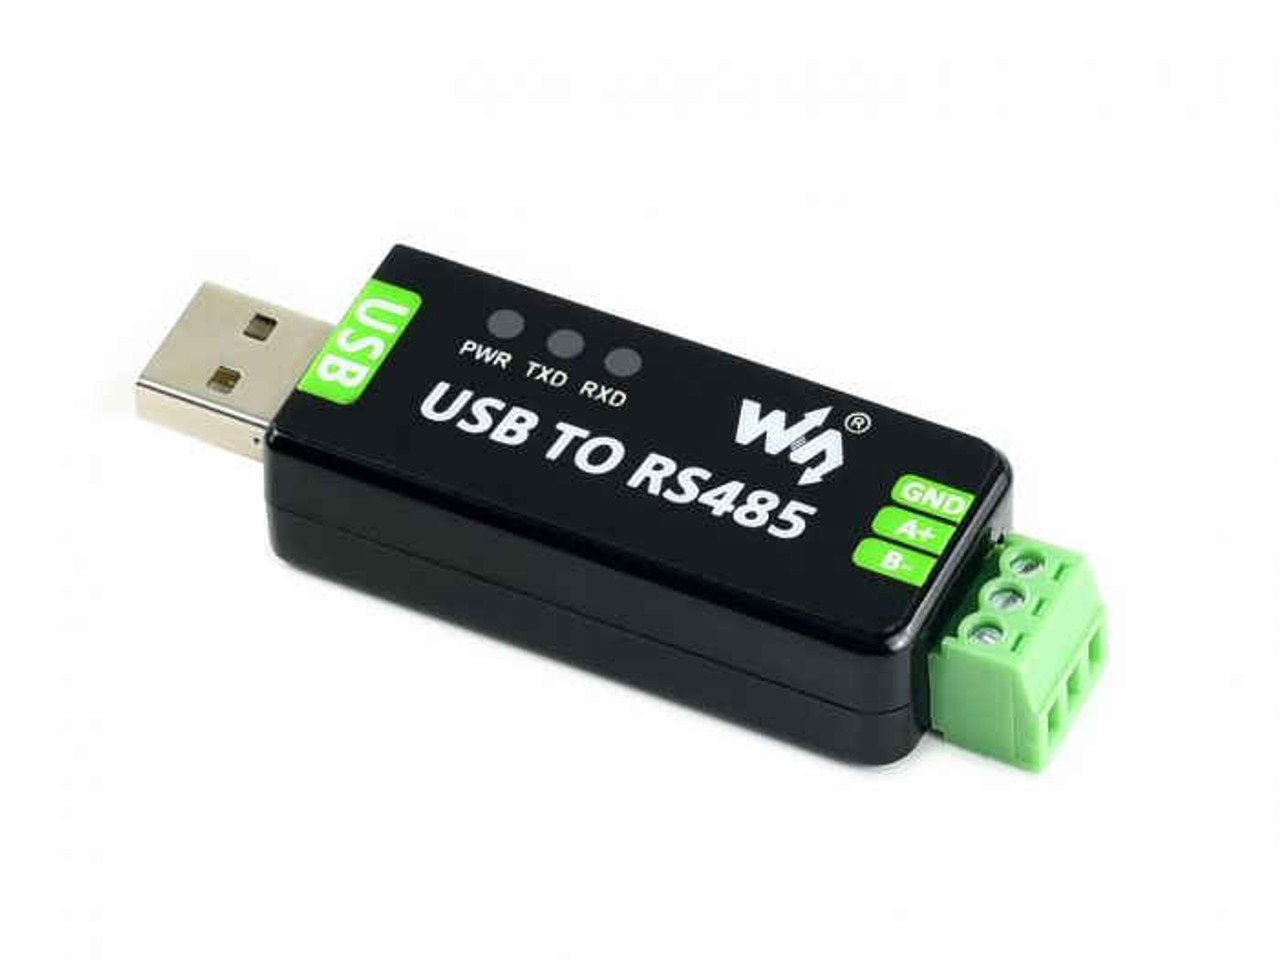 EKM Blink - RS-485 to USB Converter